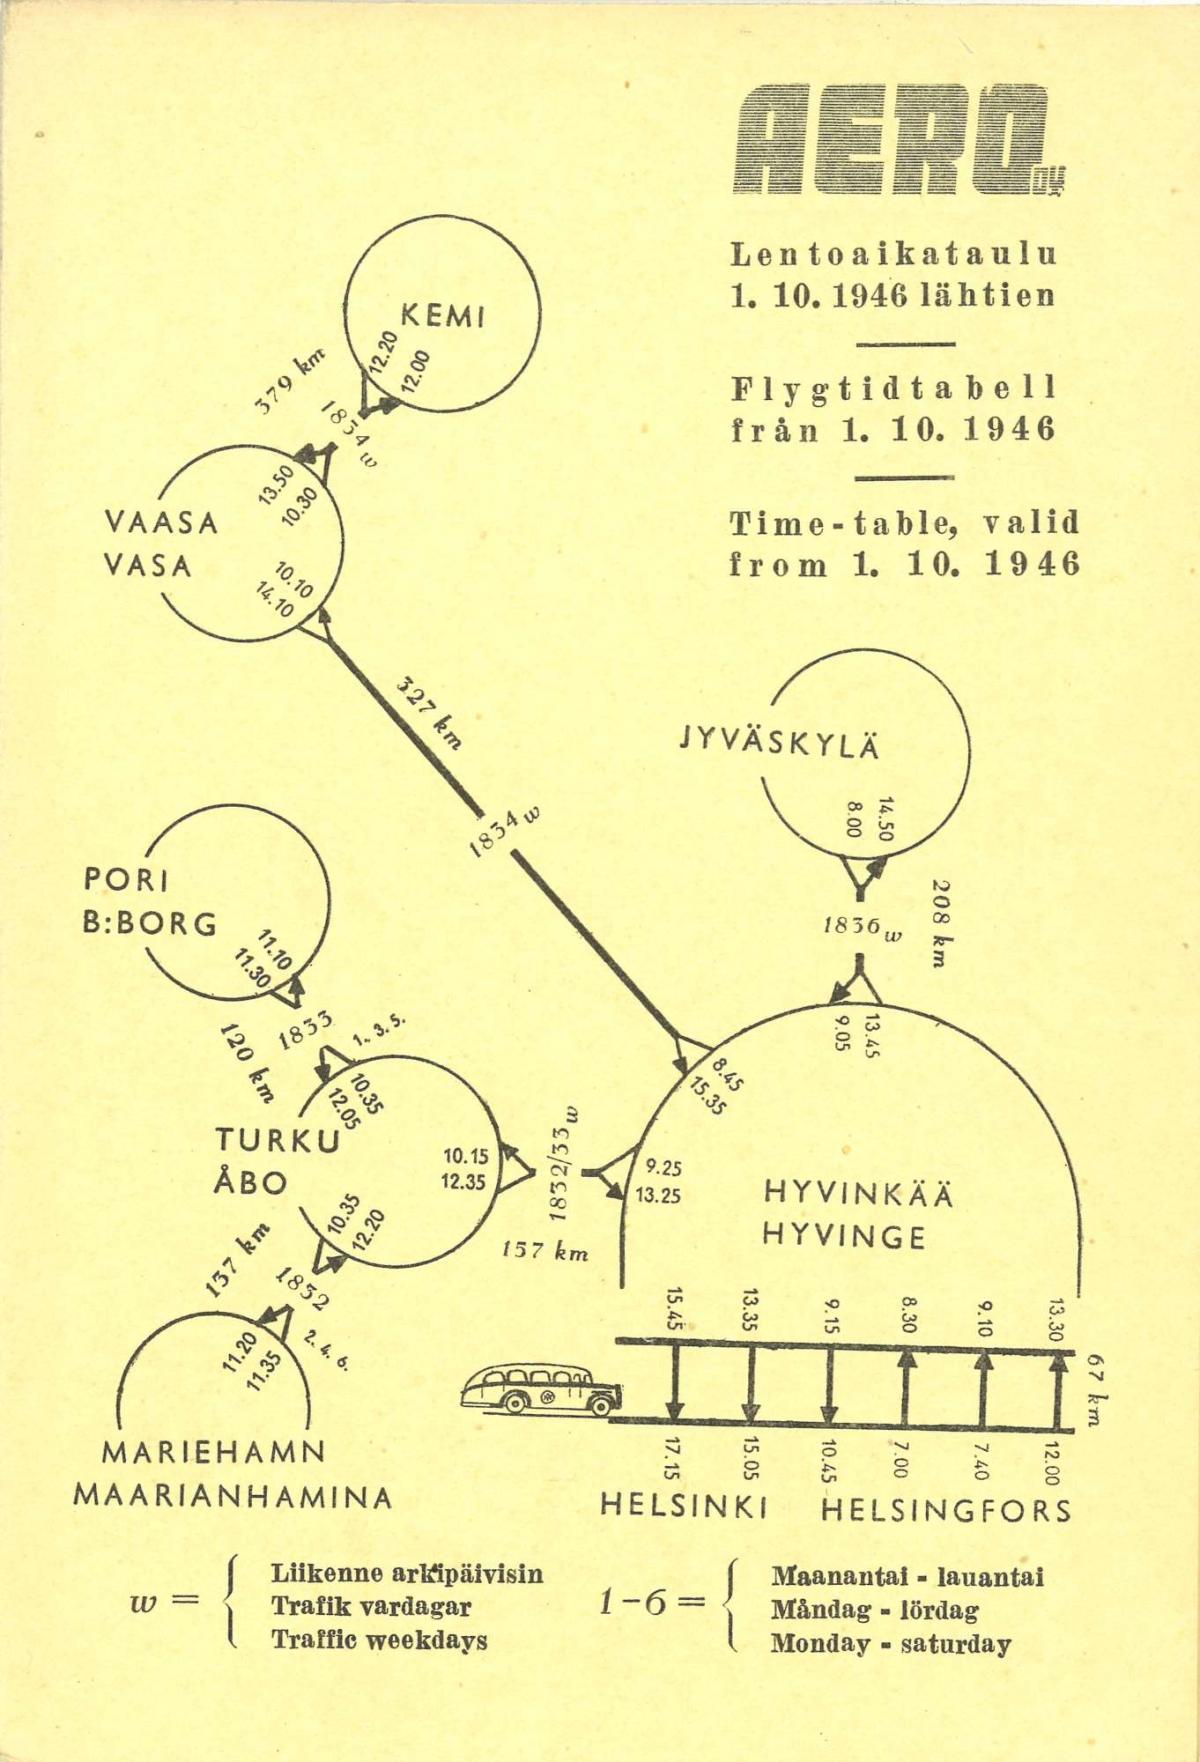 Lentoaikataulu vuodelta 1946, jossa esitelty kotimaan sisäisten lentojen pituuksia ja kestoja.